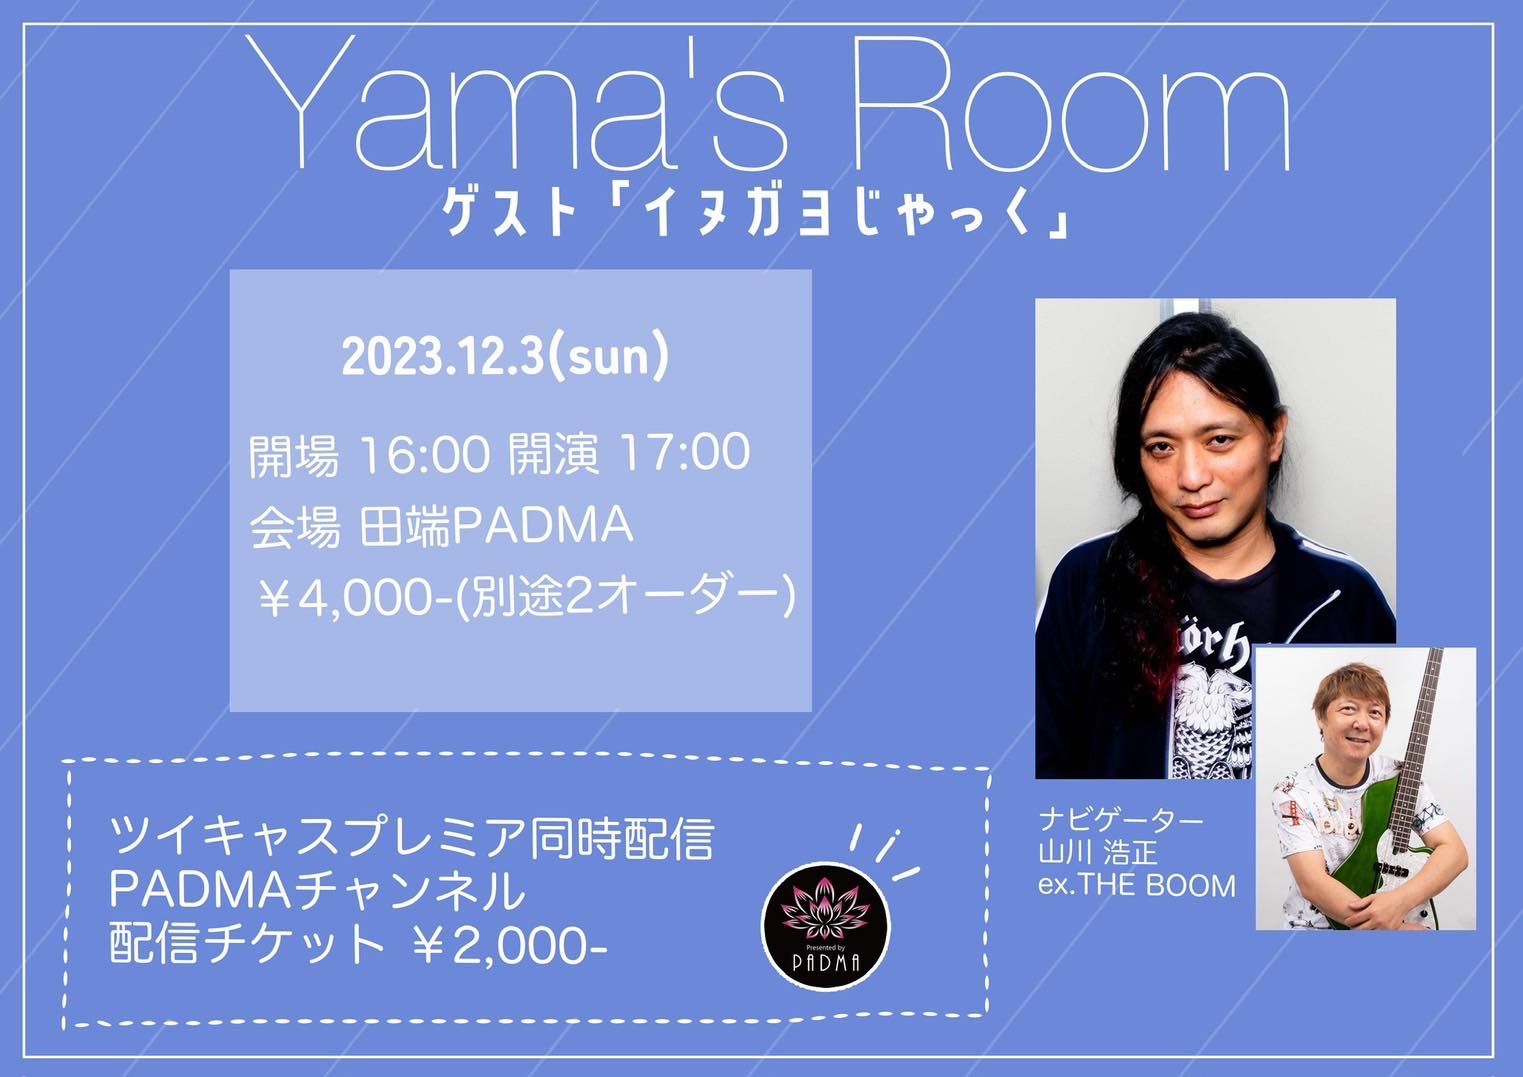 12月3日(日)Yama’s Room